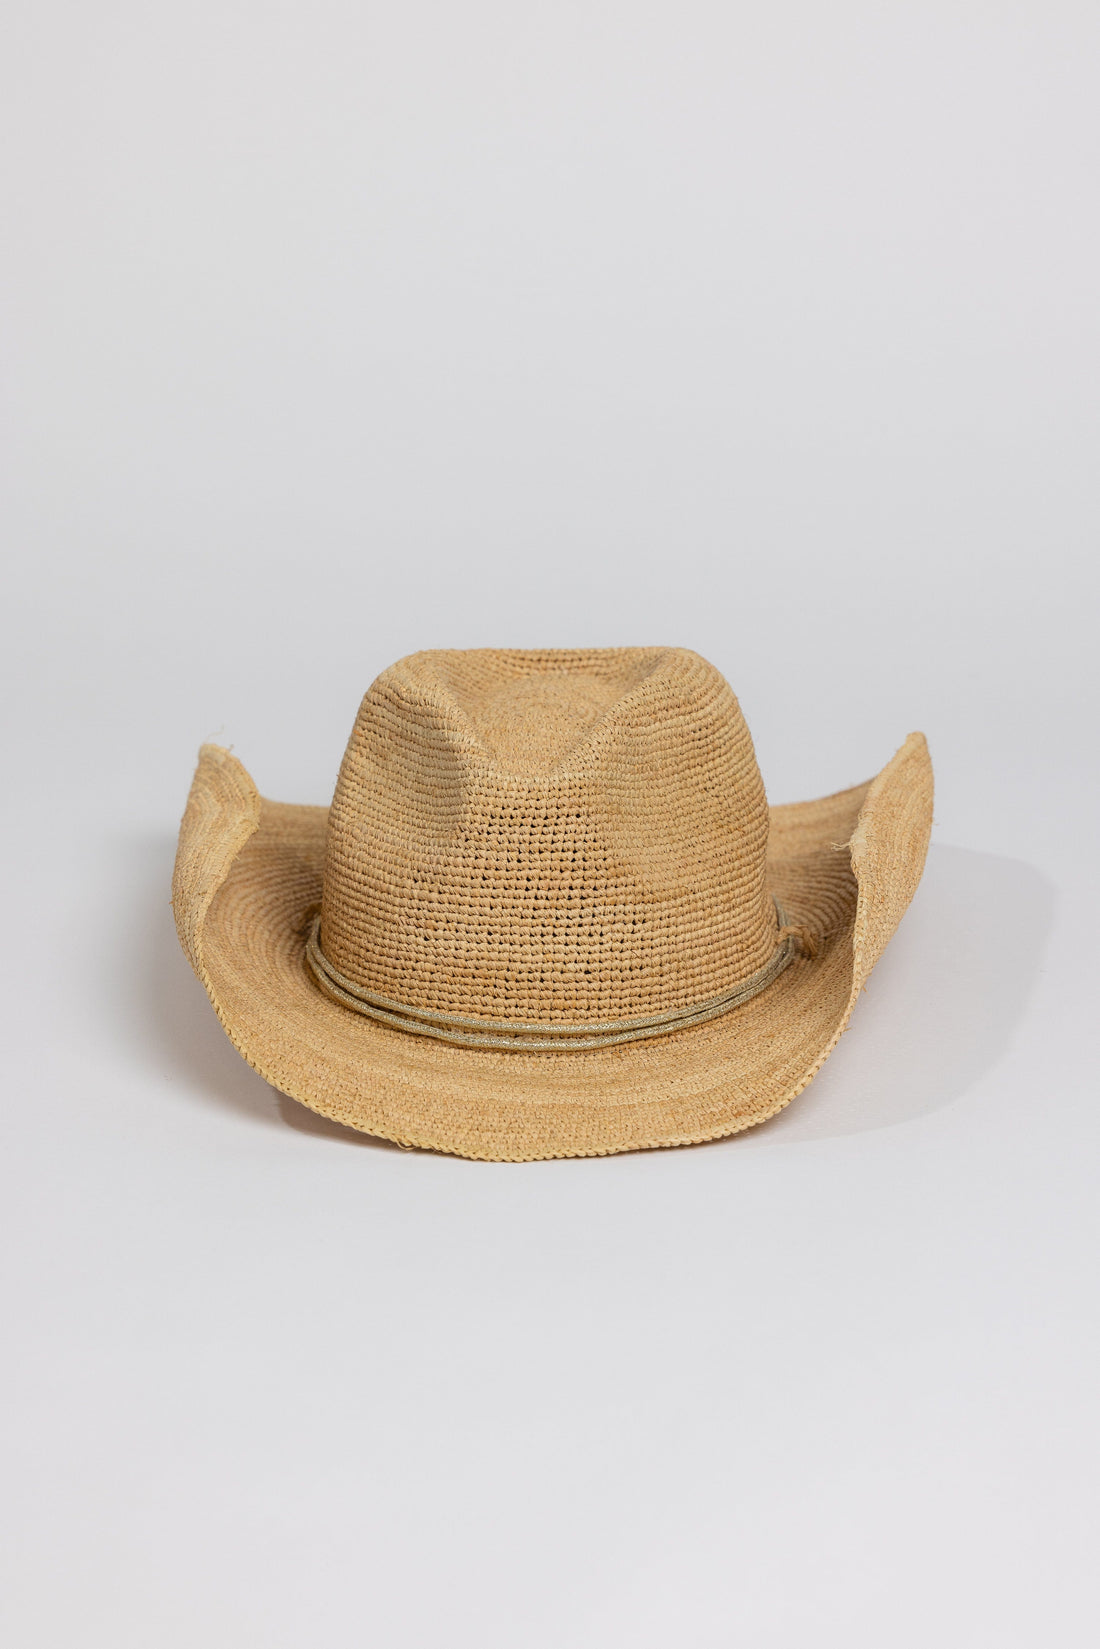 Raffia Crotchet Cowboy Hat